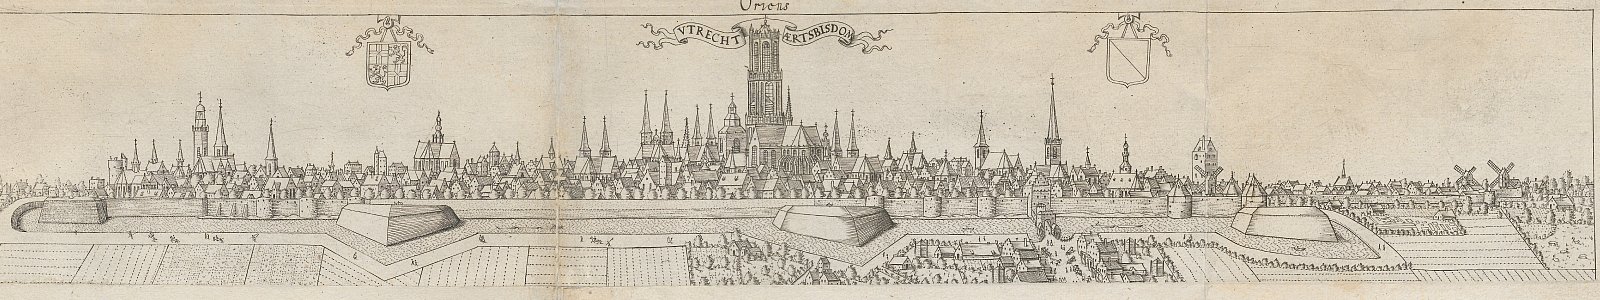 Panorama van Utrecht vanuit het oosten, Van Vianen, 1598